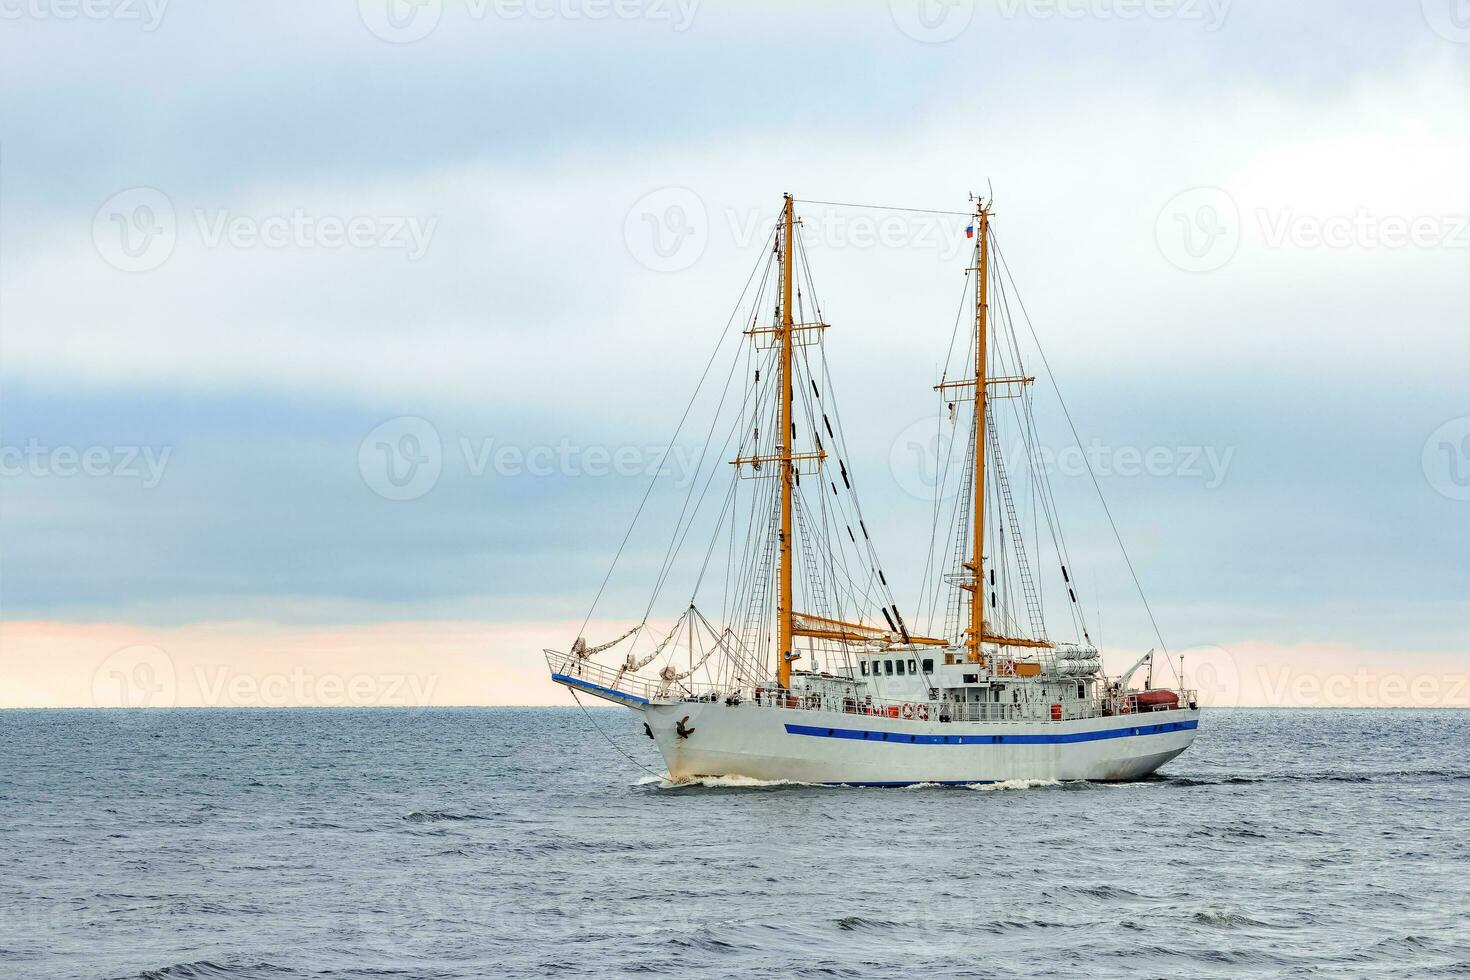 bianca andare in barca nave In arrivo a partire dal baltico mare, Europa foto